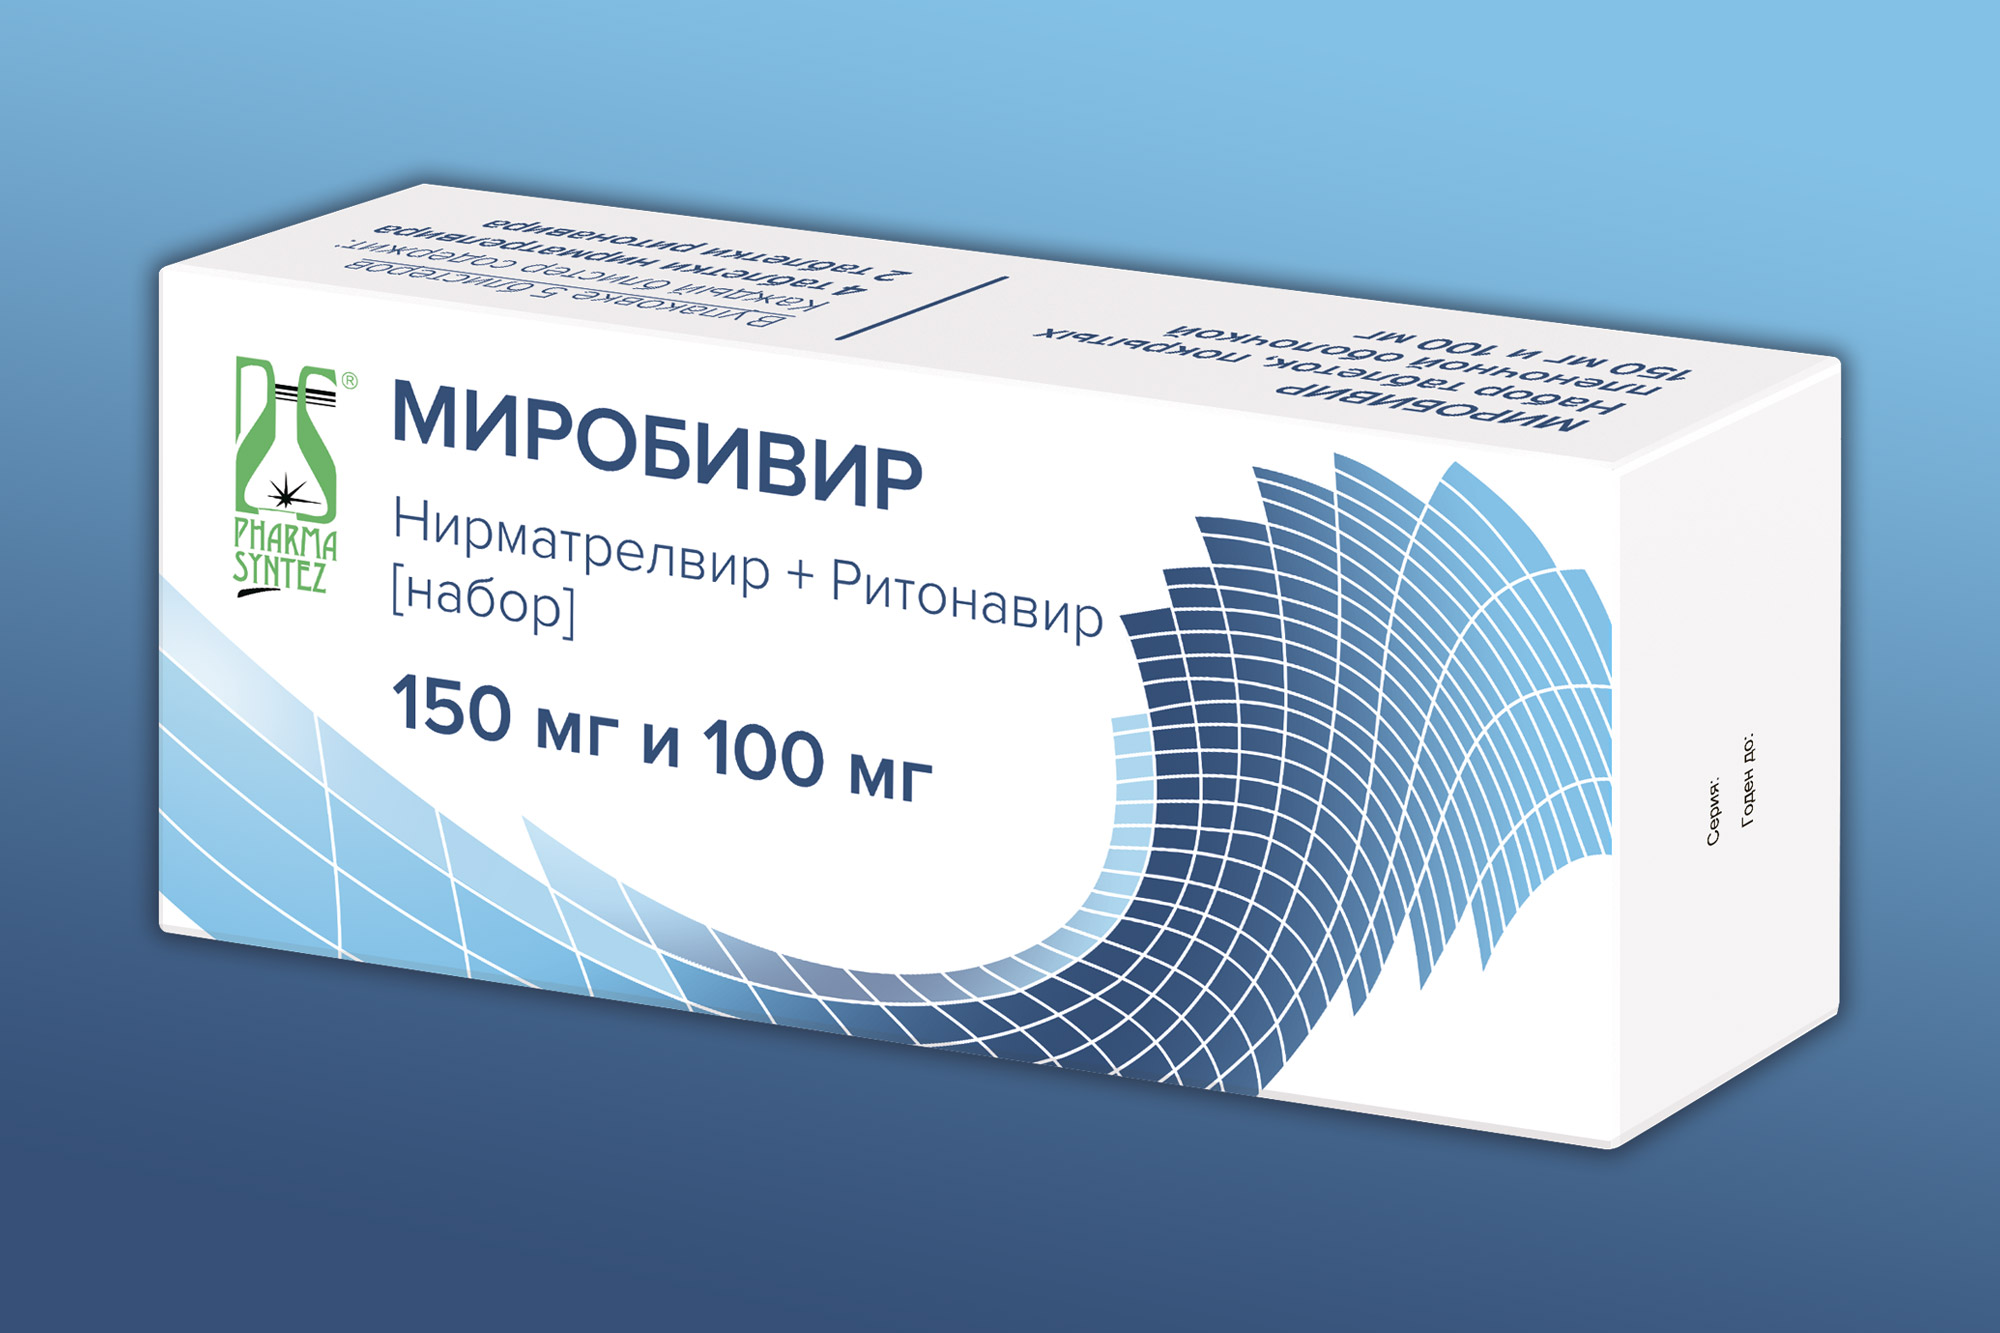 Pharmasyntez obtained MA for Mirobivir, the drug for the treatment of .